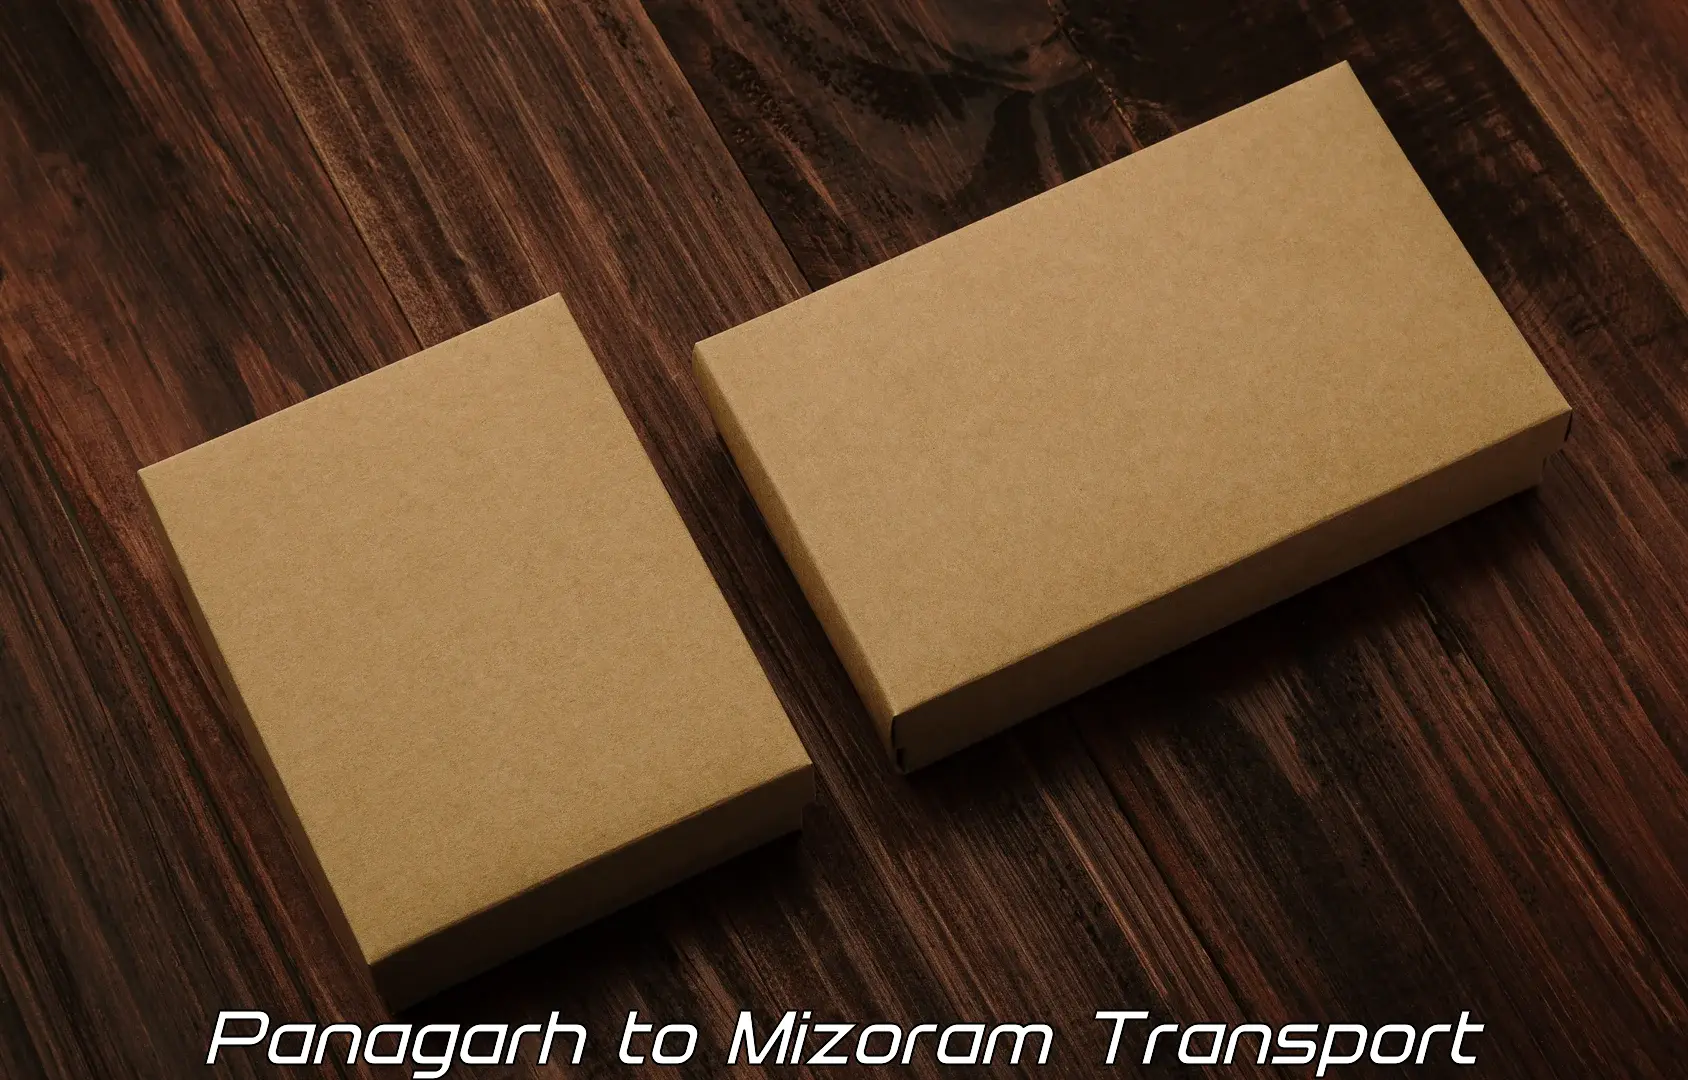 Online transport booking Panagarh to Kolasib